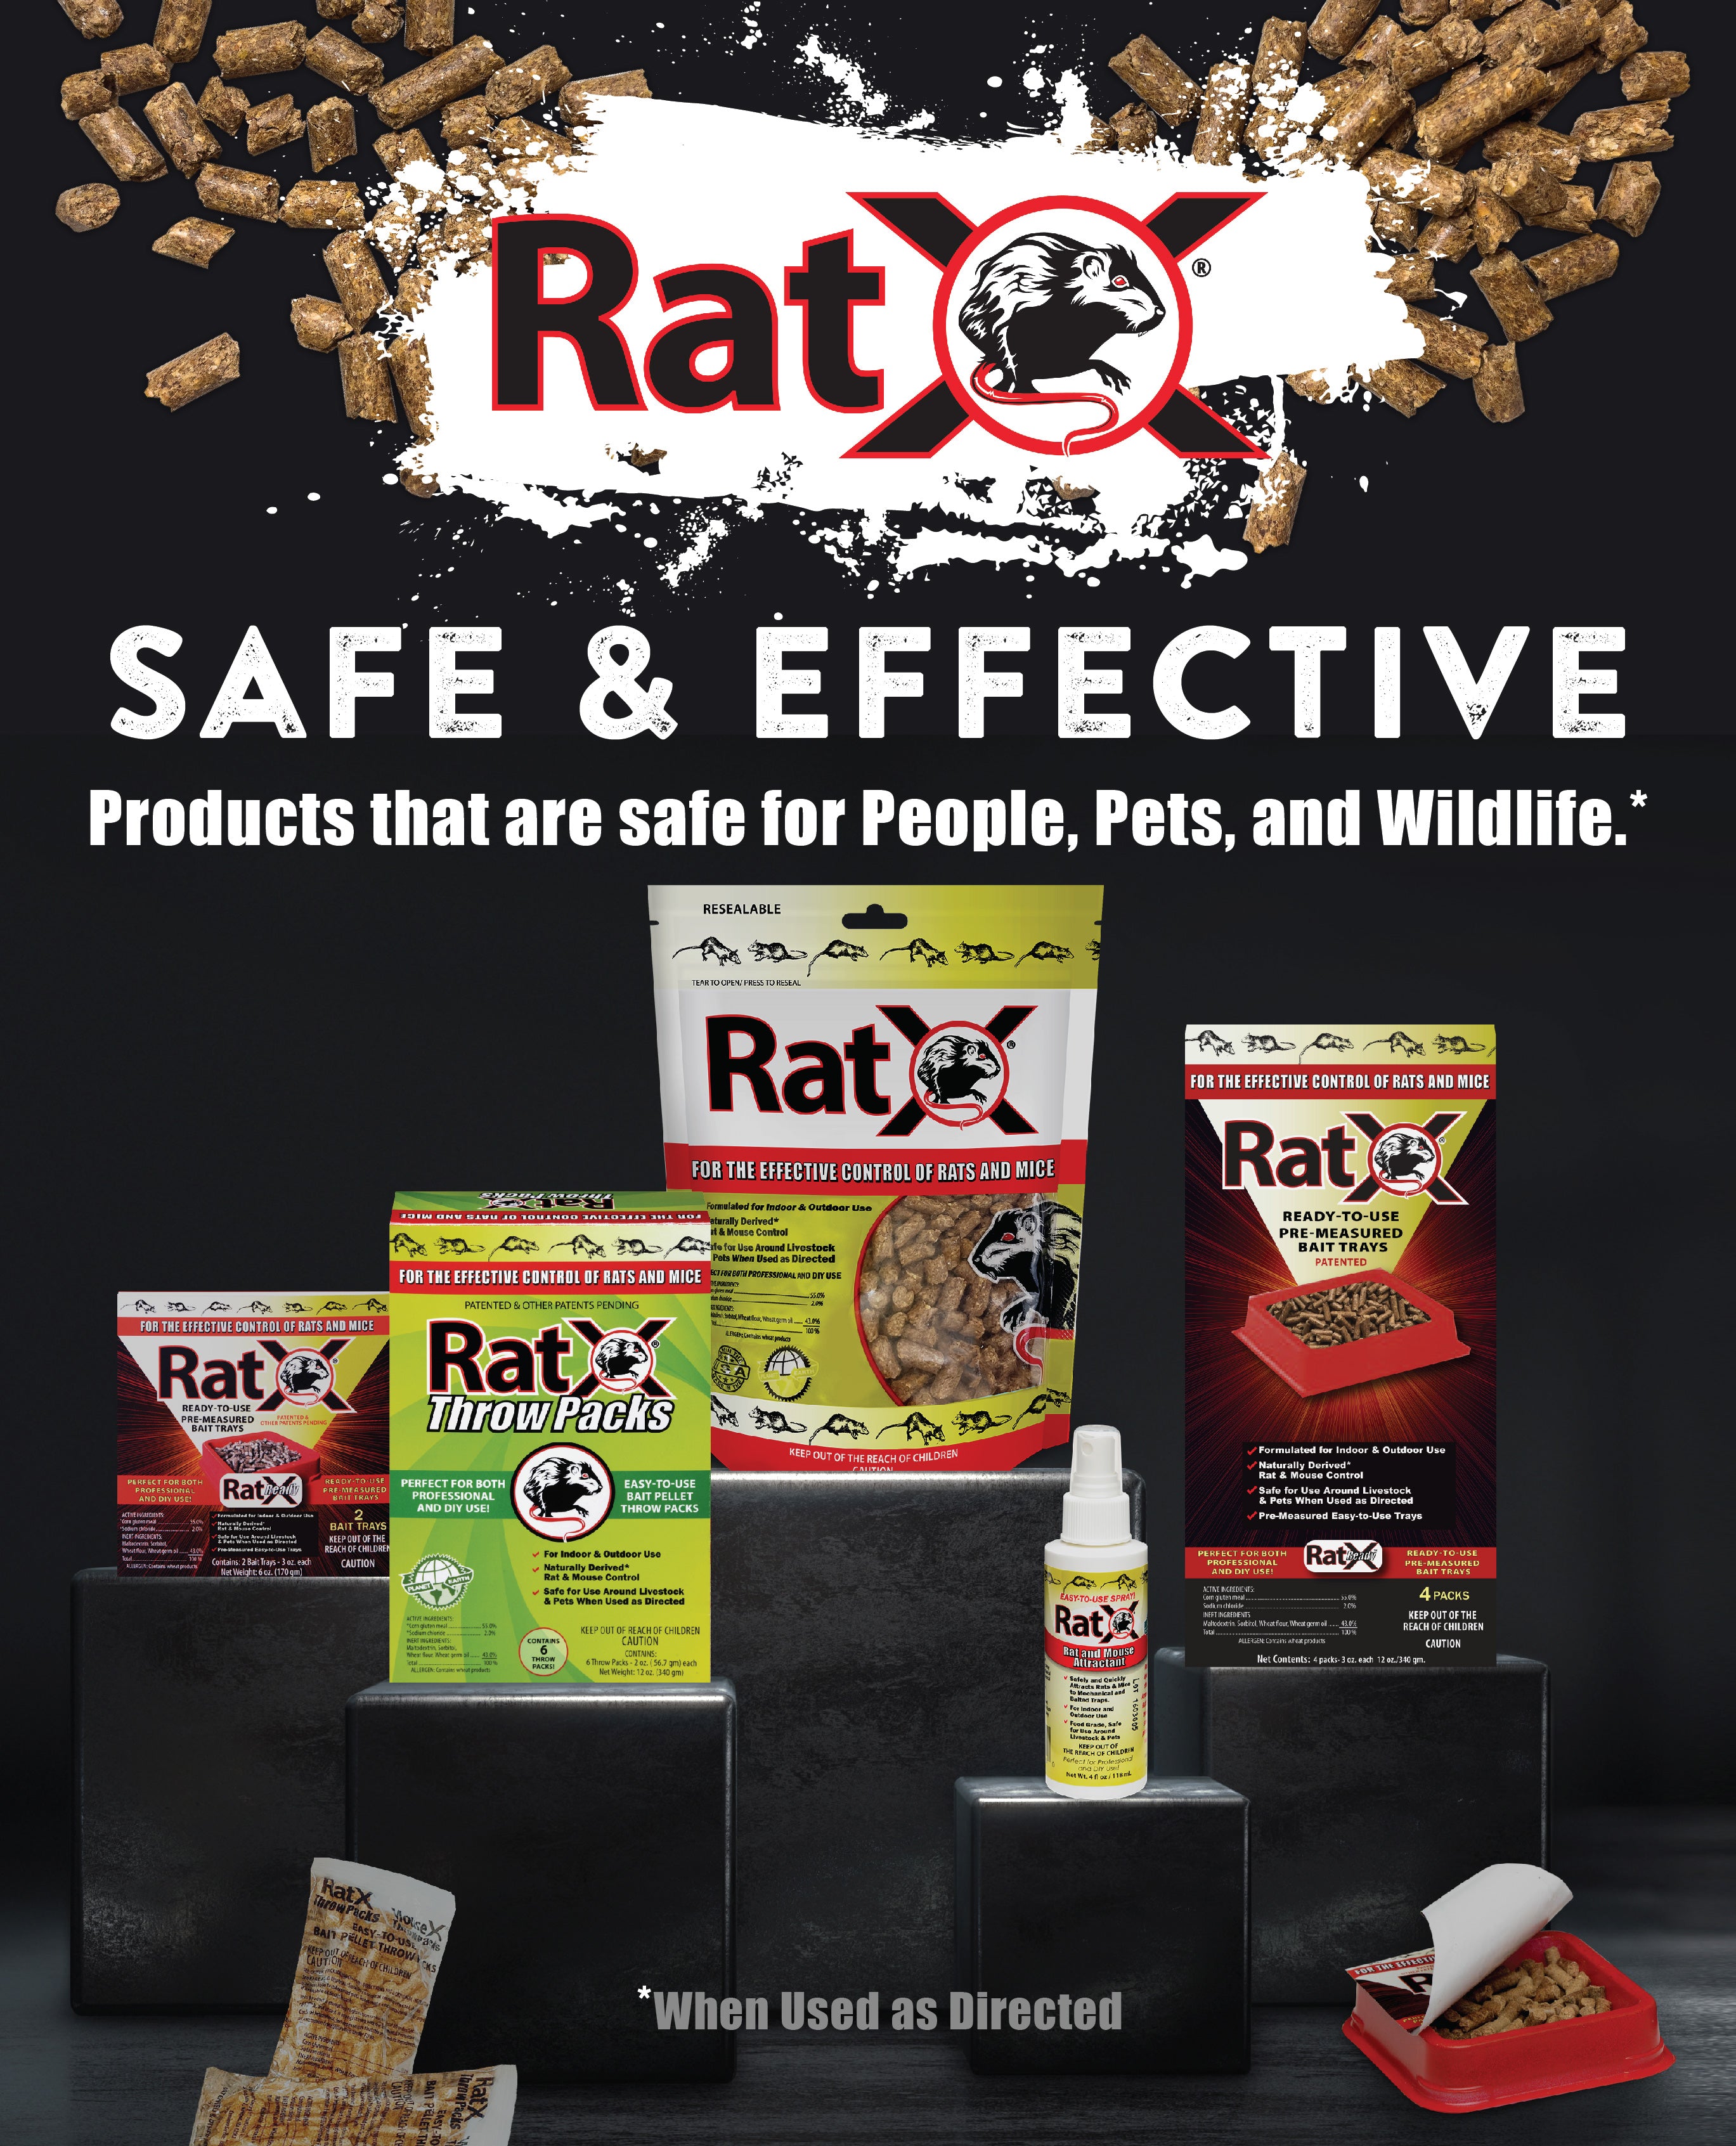 Ratsak Naturals Rodent Bait Pellets 224g